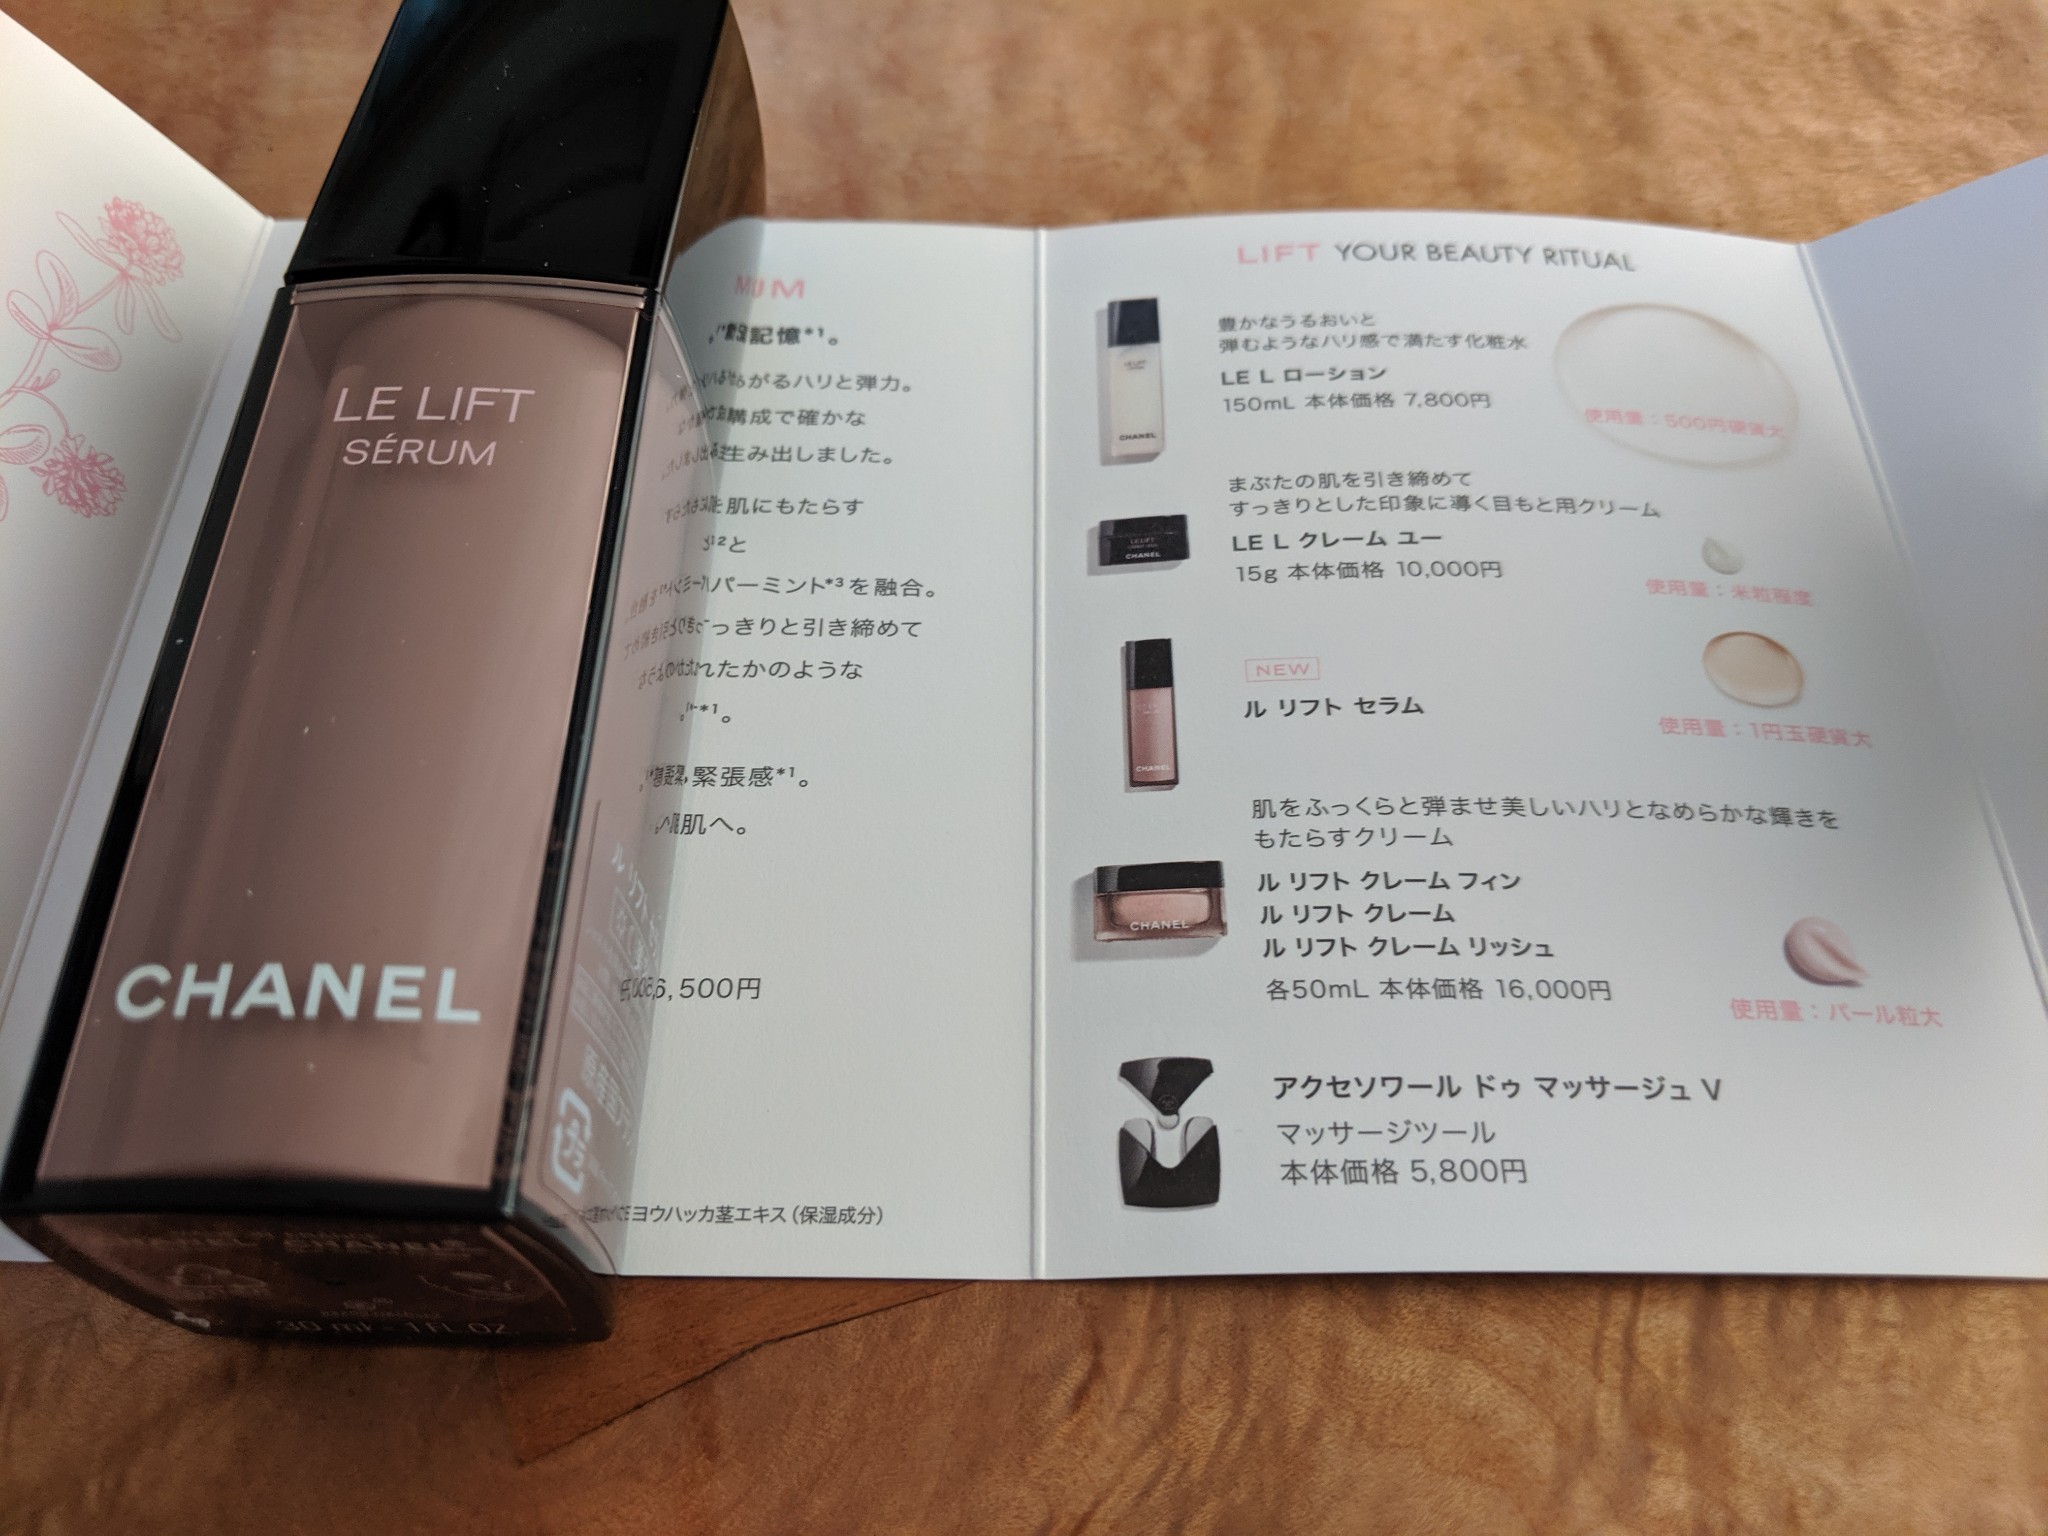 シャネル CHANEL ル リフト セラム - 基礎化粧品